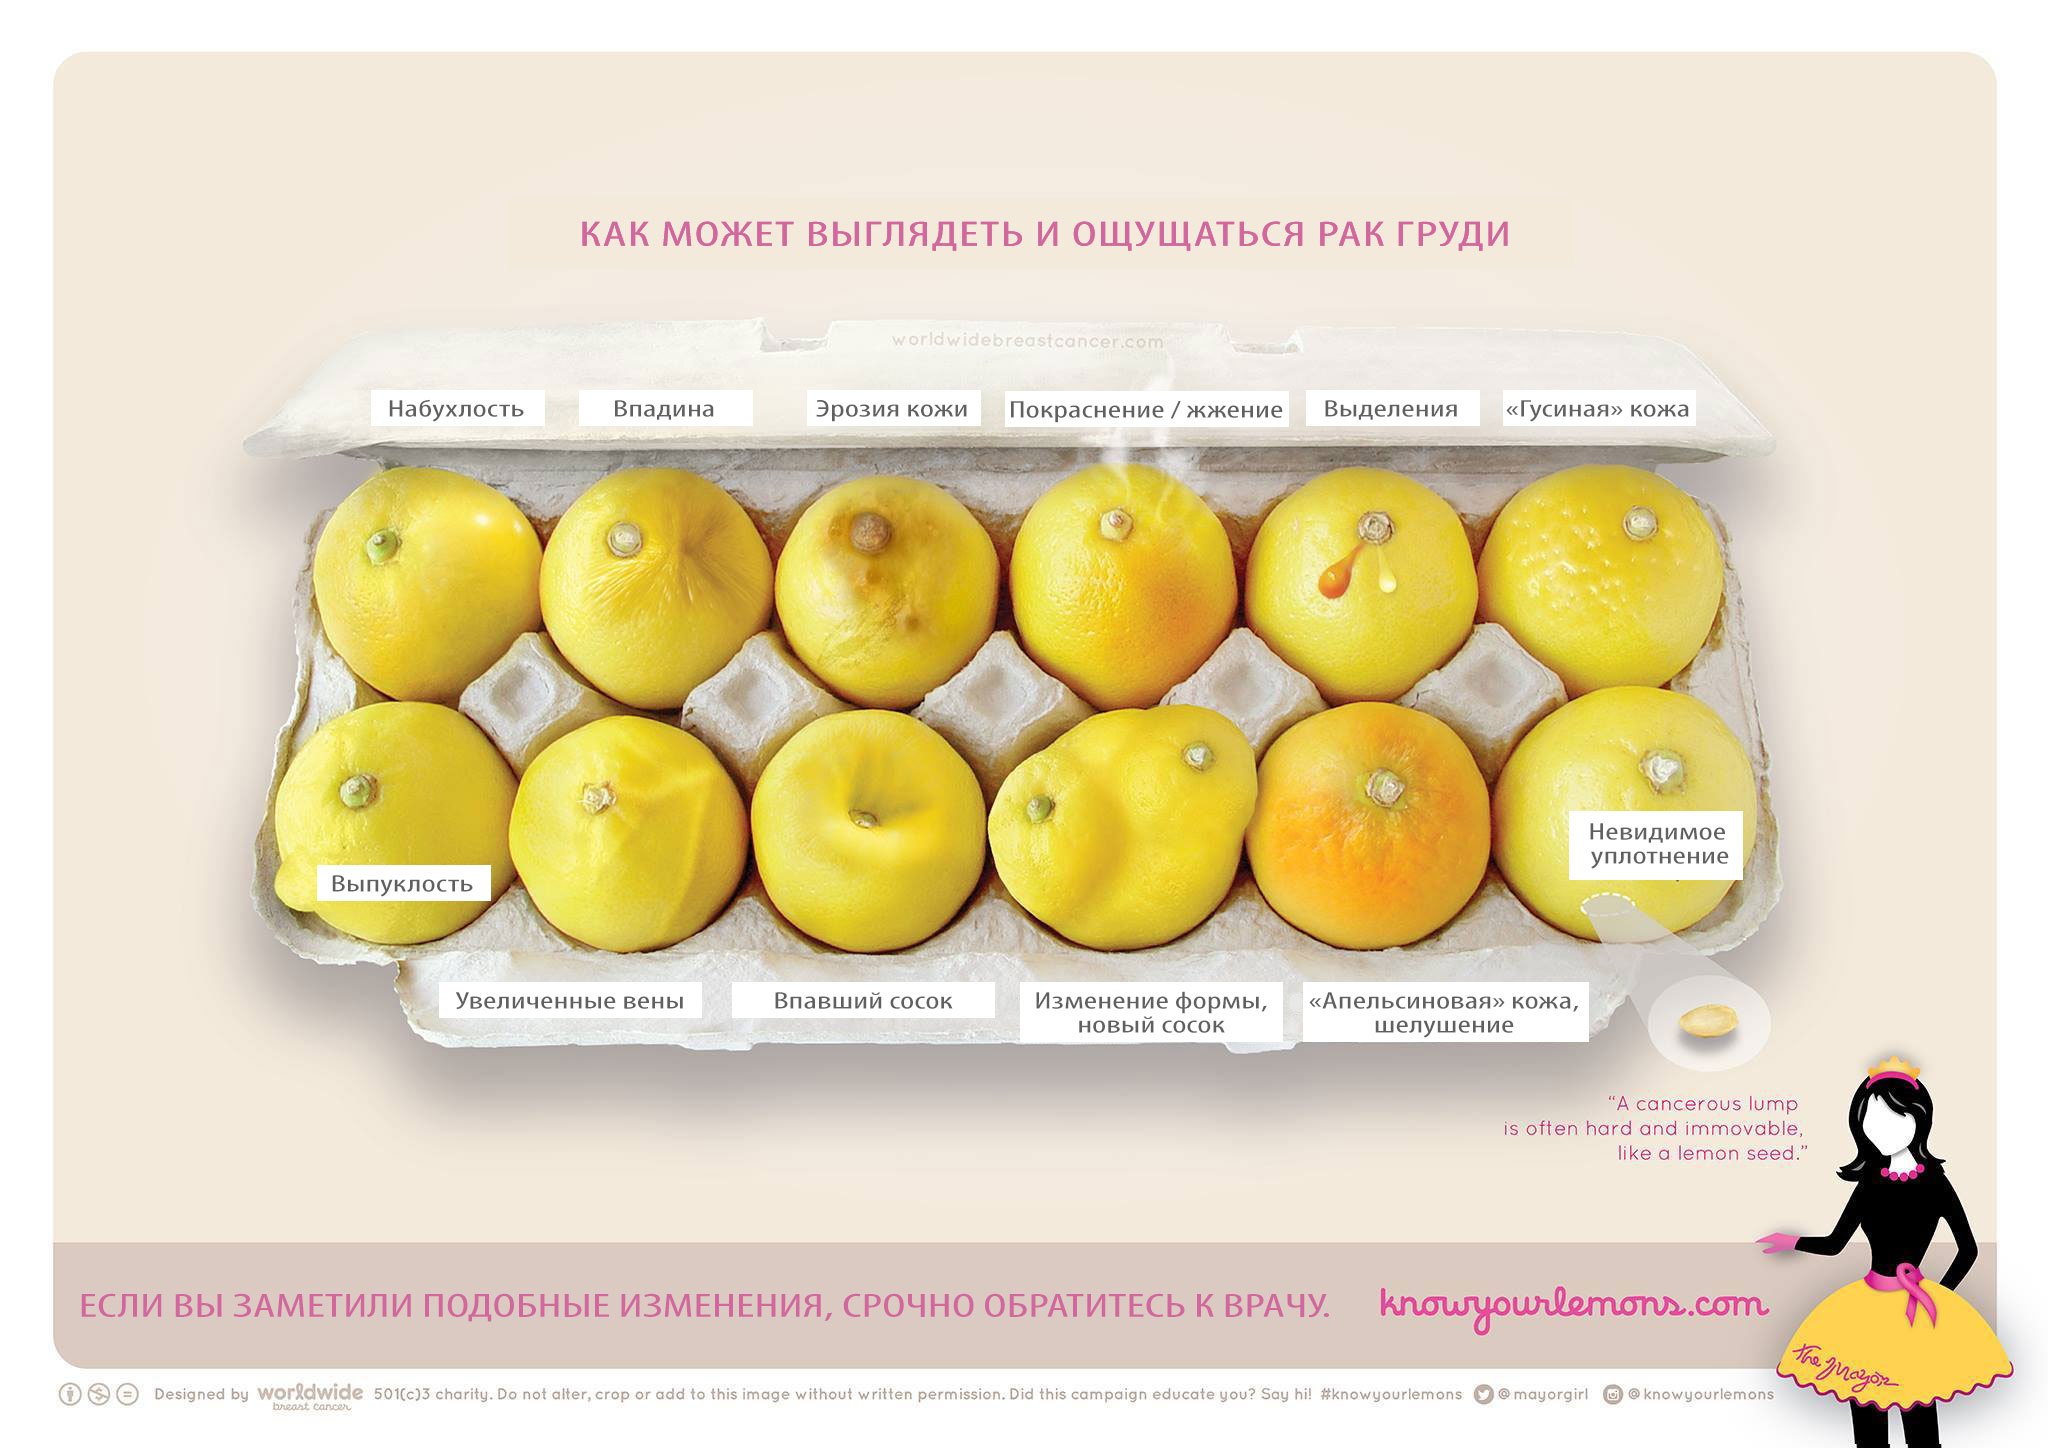 Фото лимонов, которое может стоить жизни: 12 признаков рака груди